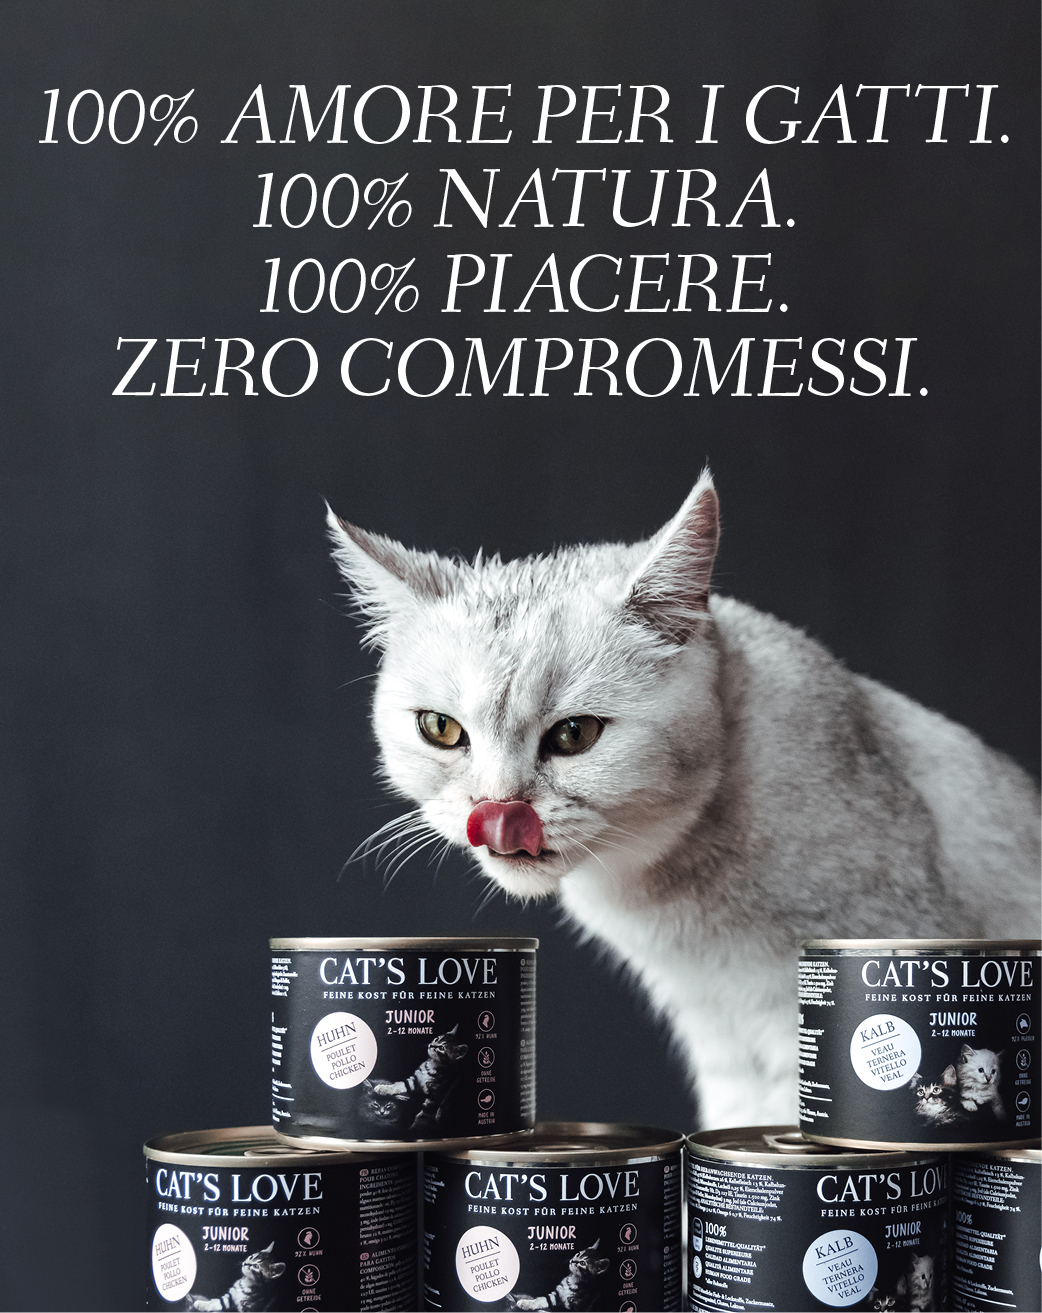 Striscione con un gatto che si lecca la bocca e i prodotti CAT'S LOVE davanti a lui. Il testo del banner recita: 100% CAT'S LOVE. 100% NATURA. 10% DIVERTIMENTO. Nessun compromesso.